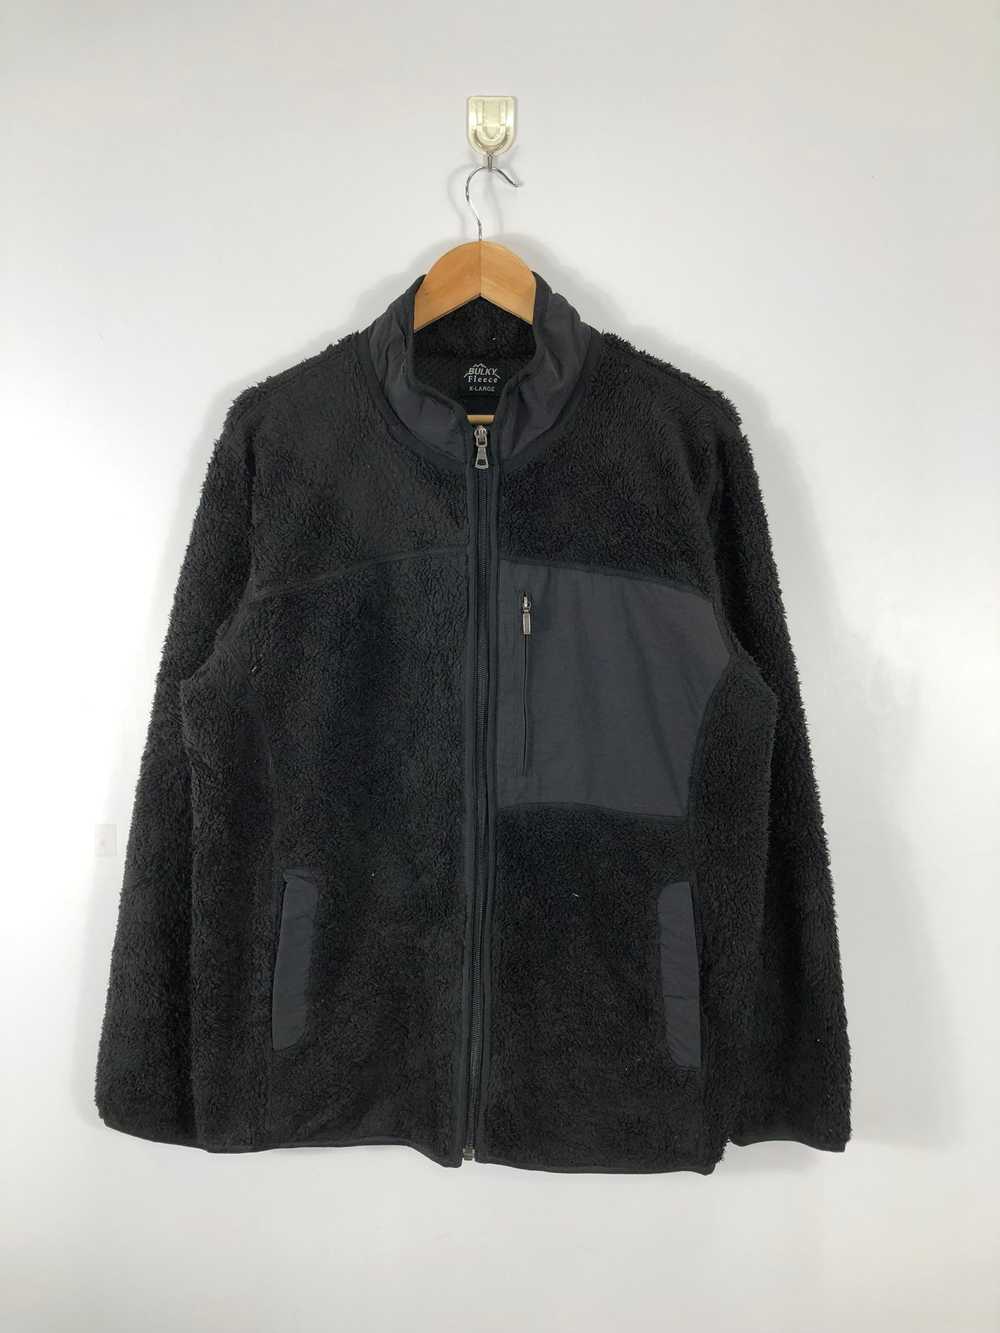 Uniqlo - Uniqlo Matted Bulky Fleece Jacket - image 1